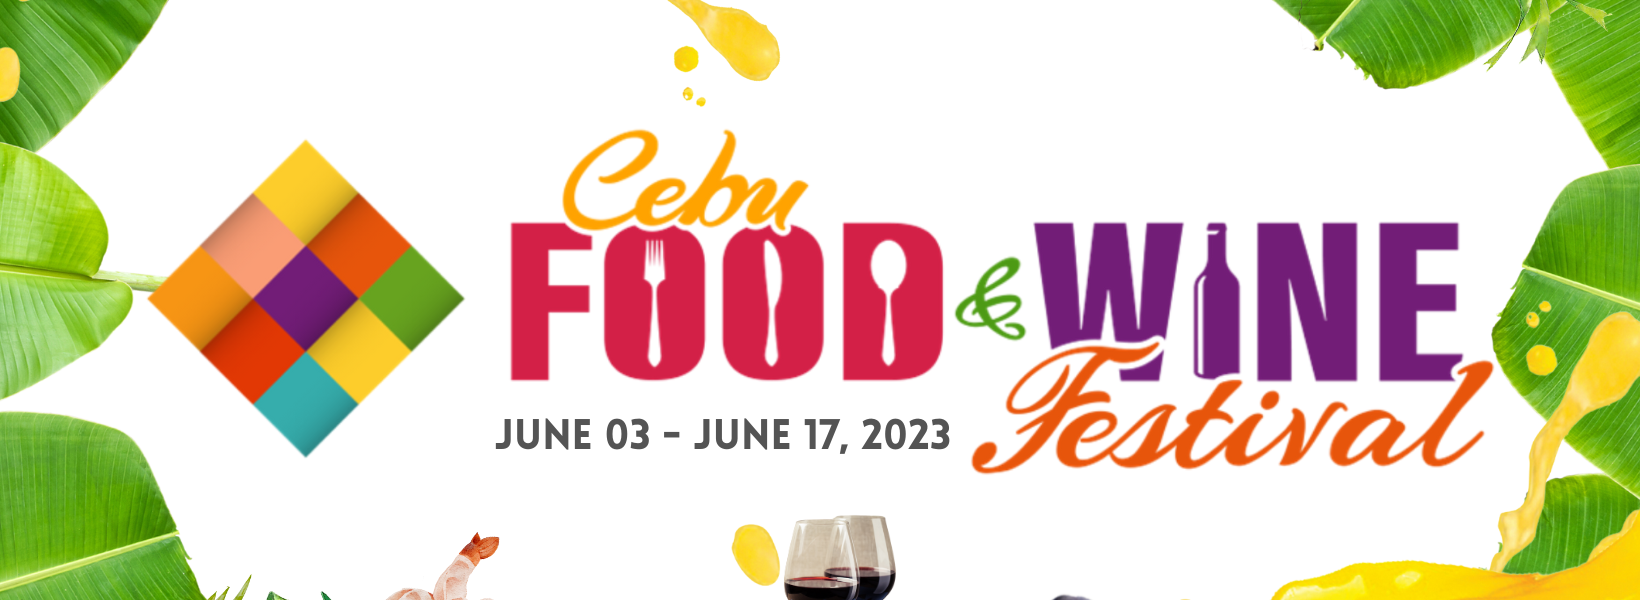 Cebu Food and Wine Festival 2023